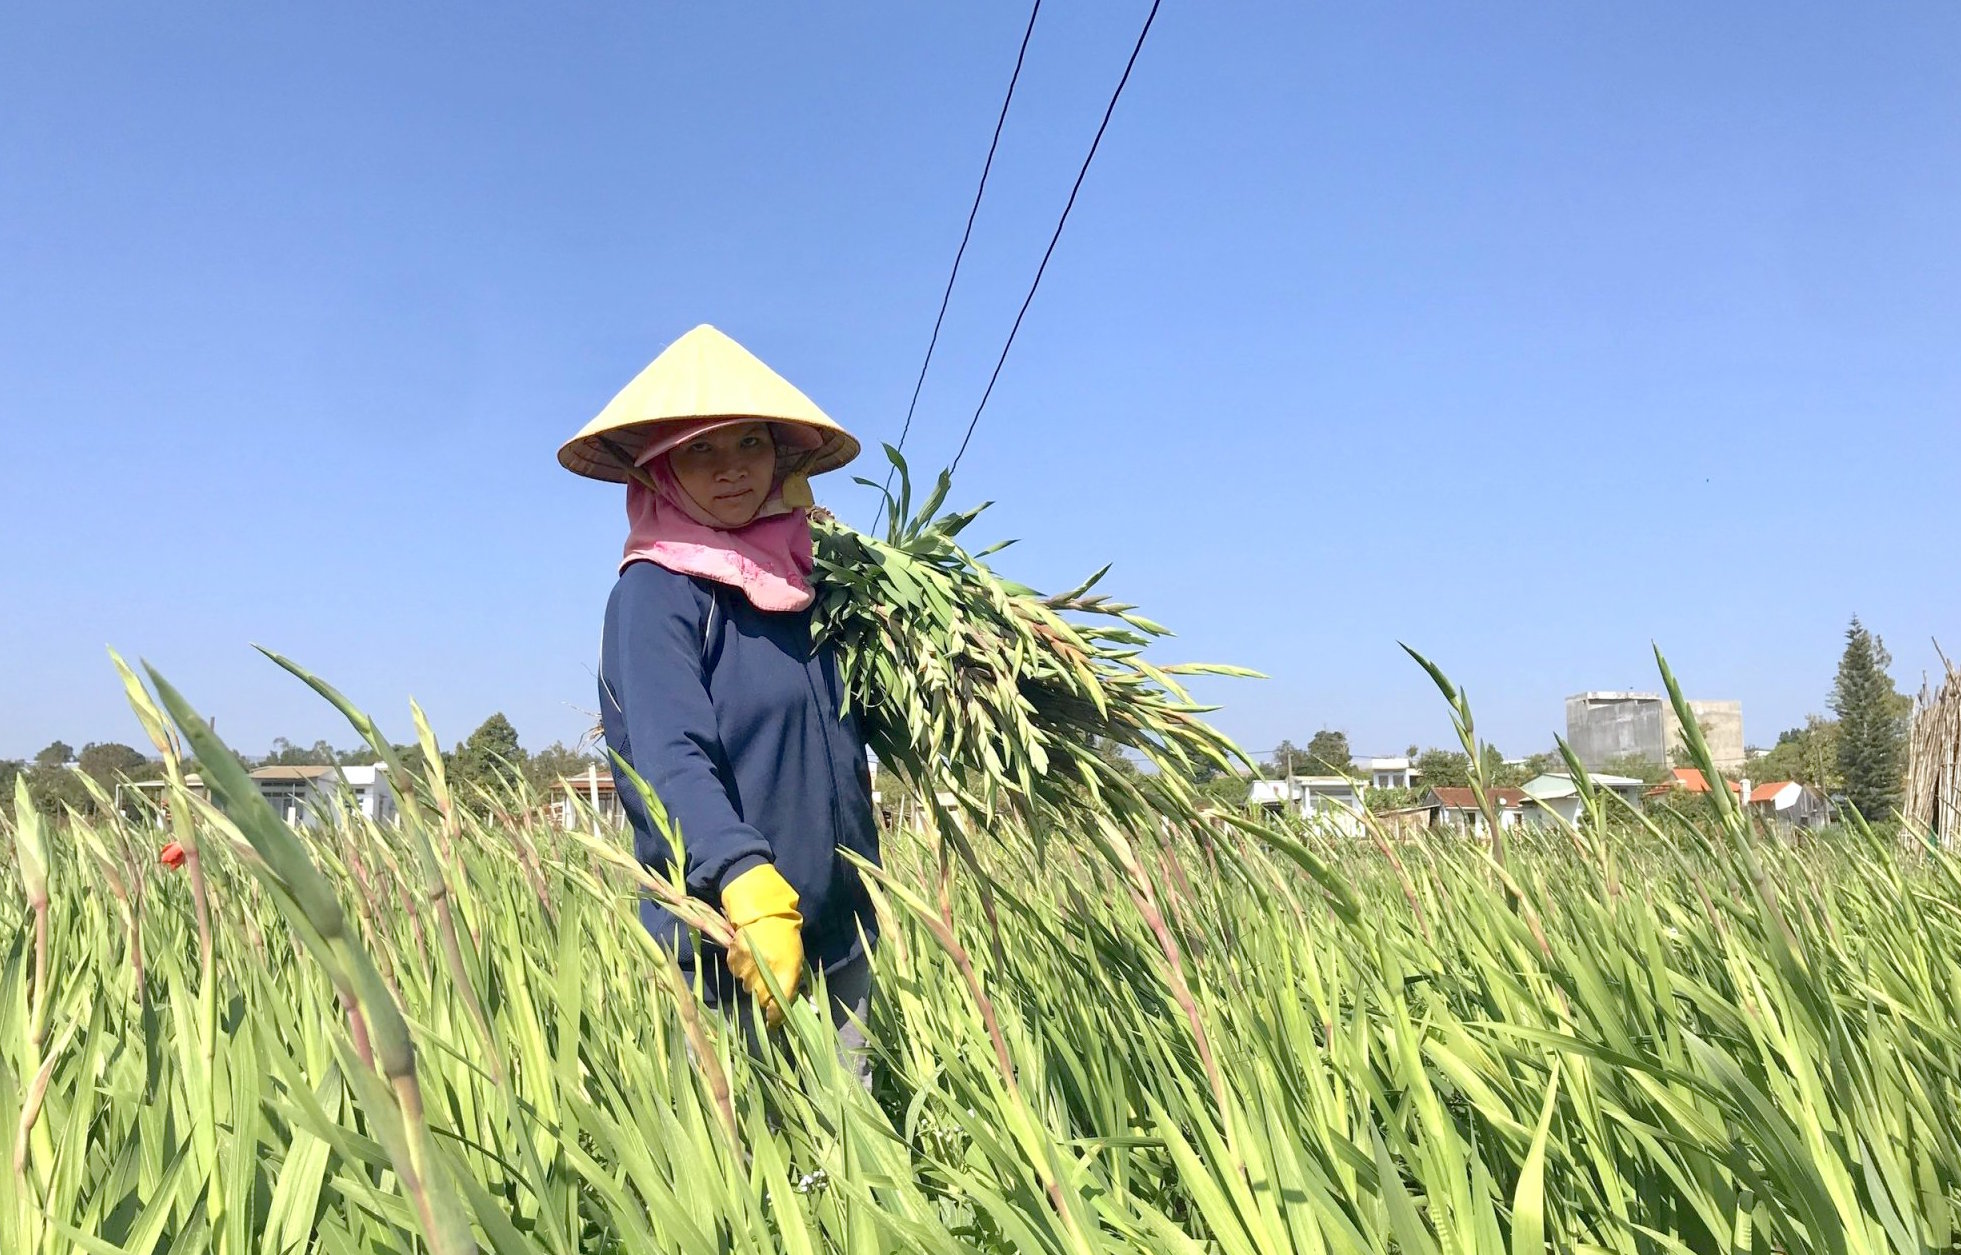 Xã An Phú đang tập trung triển khai chuyển đổi đất lúa 1 vụ kém hiệu quả sang trồng rau, hoa các loại cho giá trị kinh tế cao. Ảnh: Hồng Thi 3